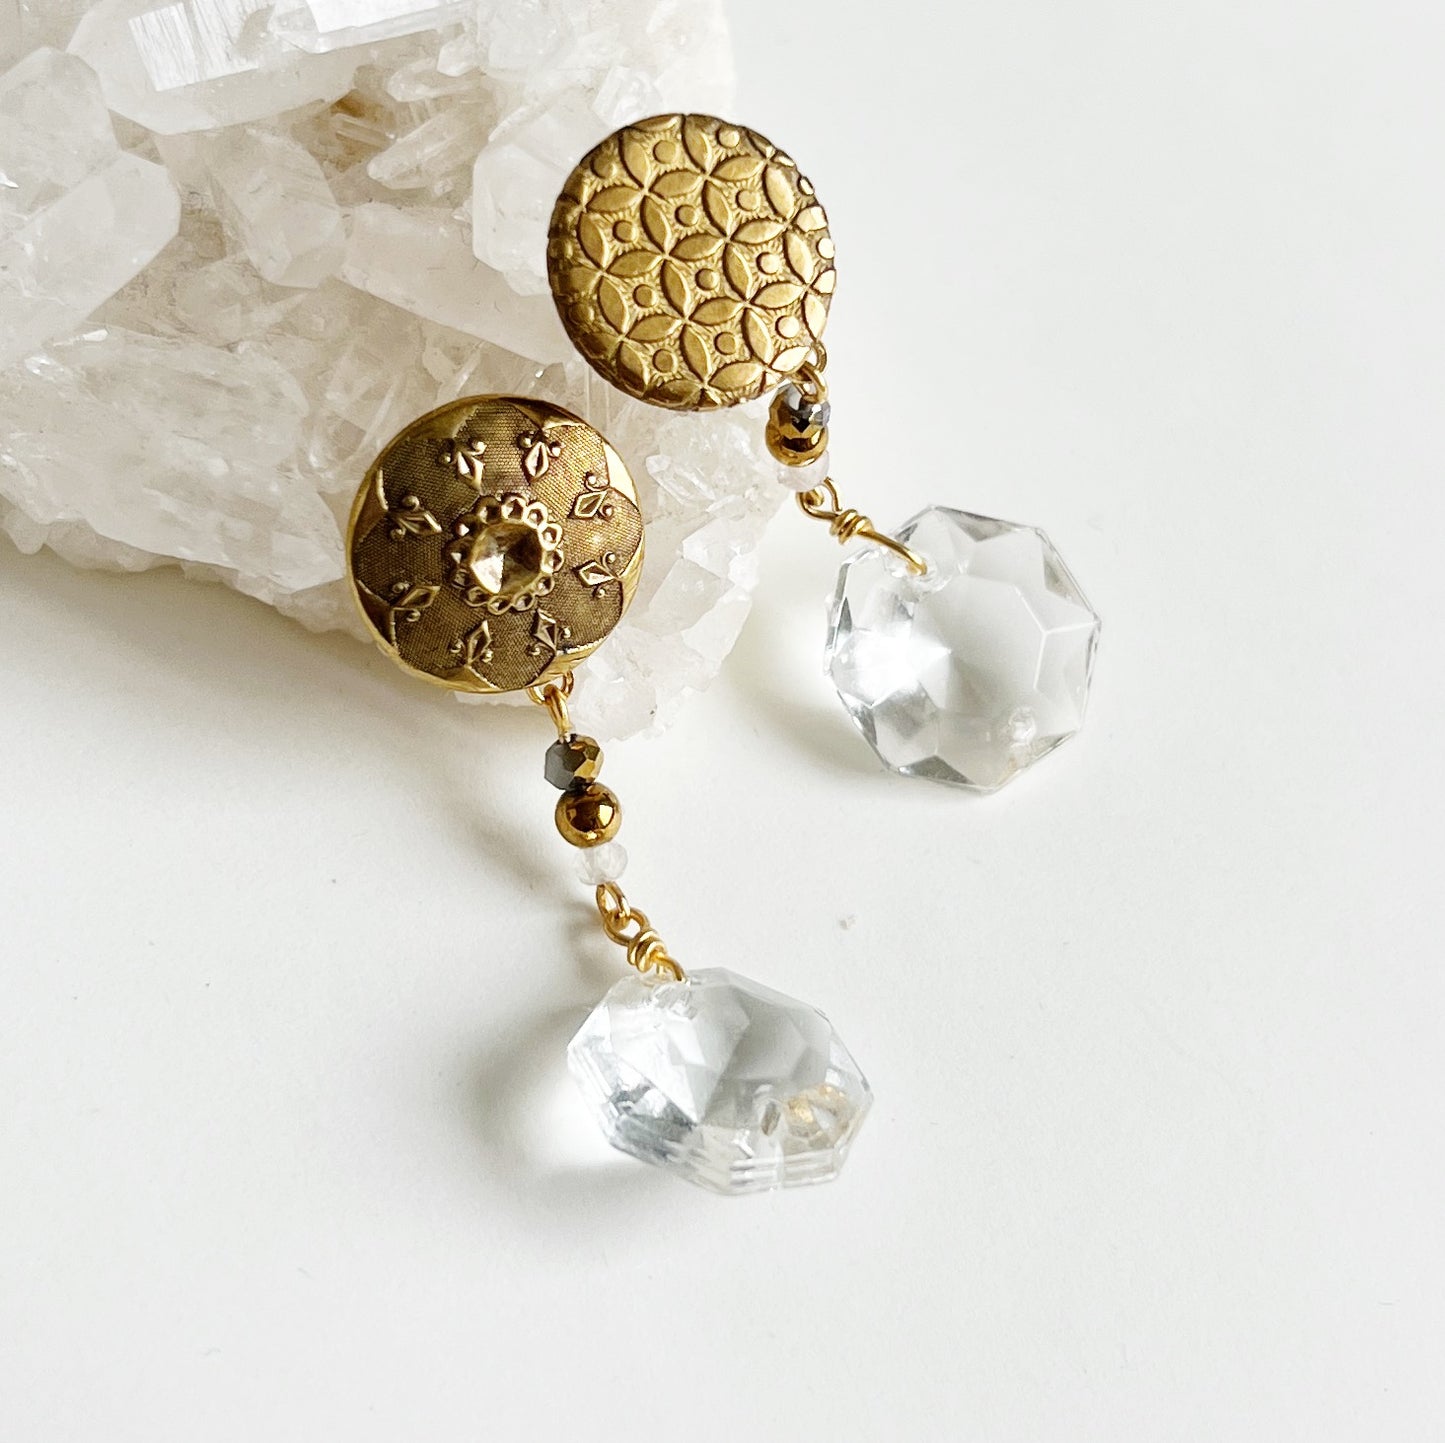 Vintage button earrings -chandelier glass-